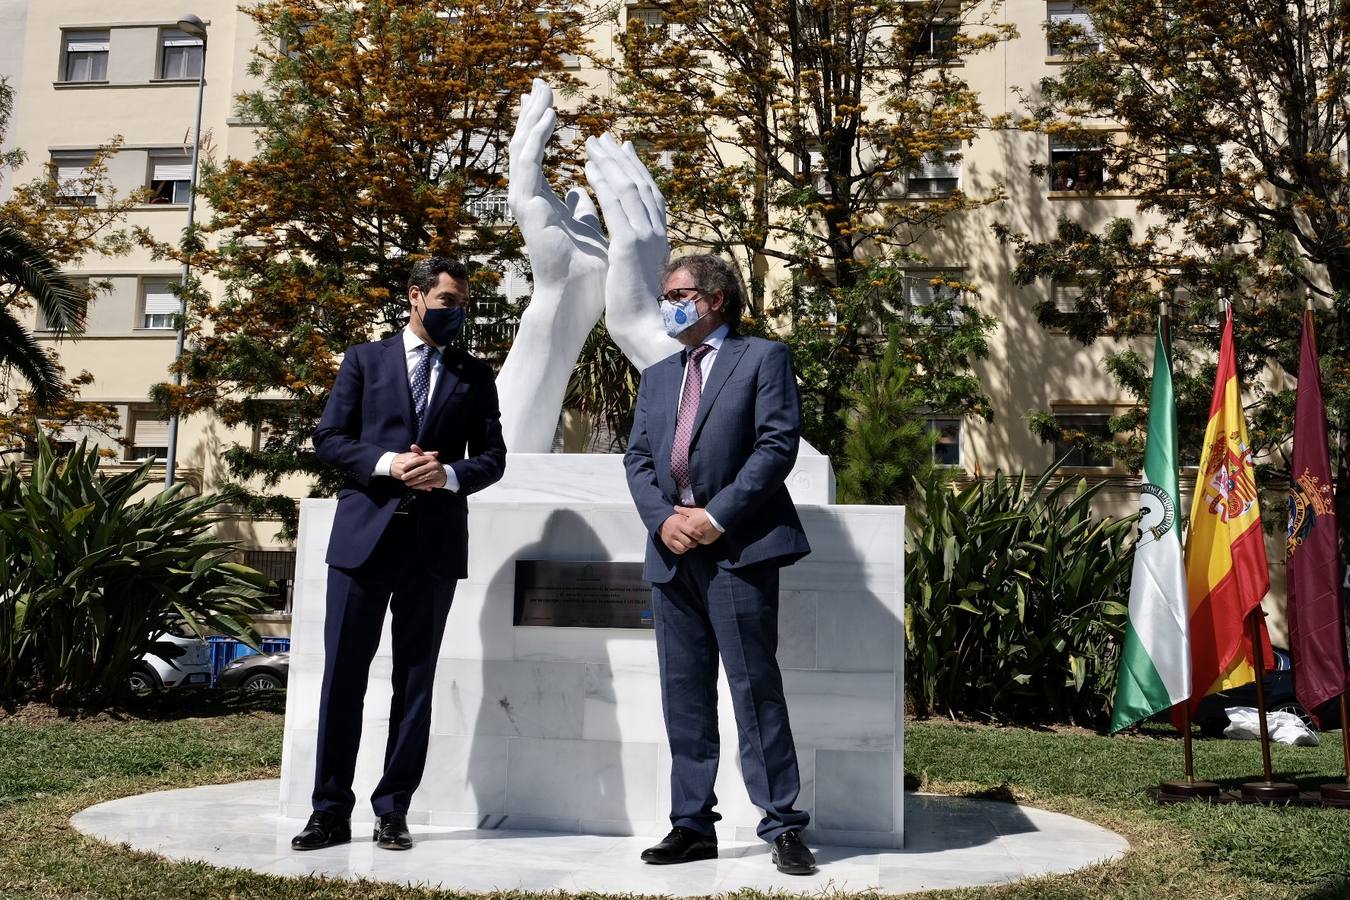 Inauguración de la escultura de homenaje a los profesionales sanitarios y sectores esenciales en Cádiz